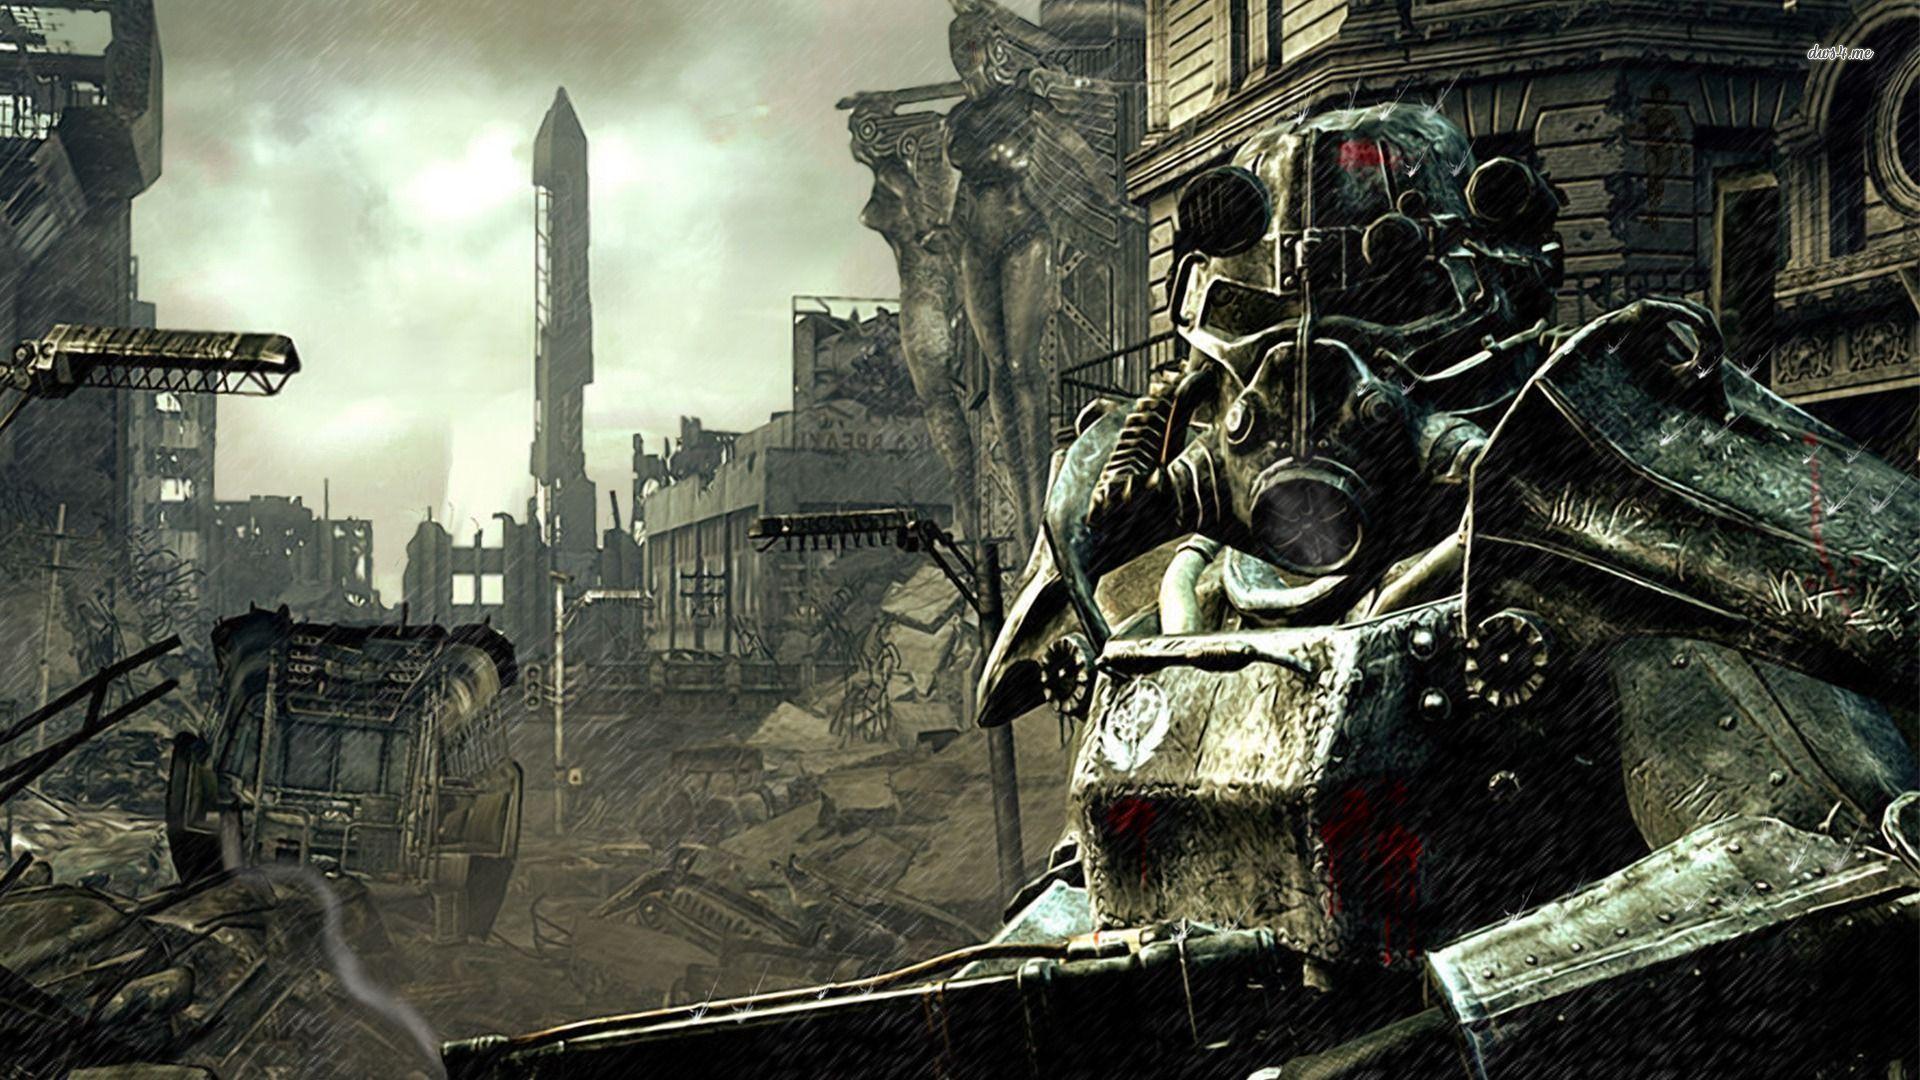  Los creadores de “Westworld” trabajan en una serie basada en el videojuego “Fallout” para Amazon